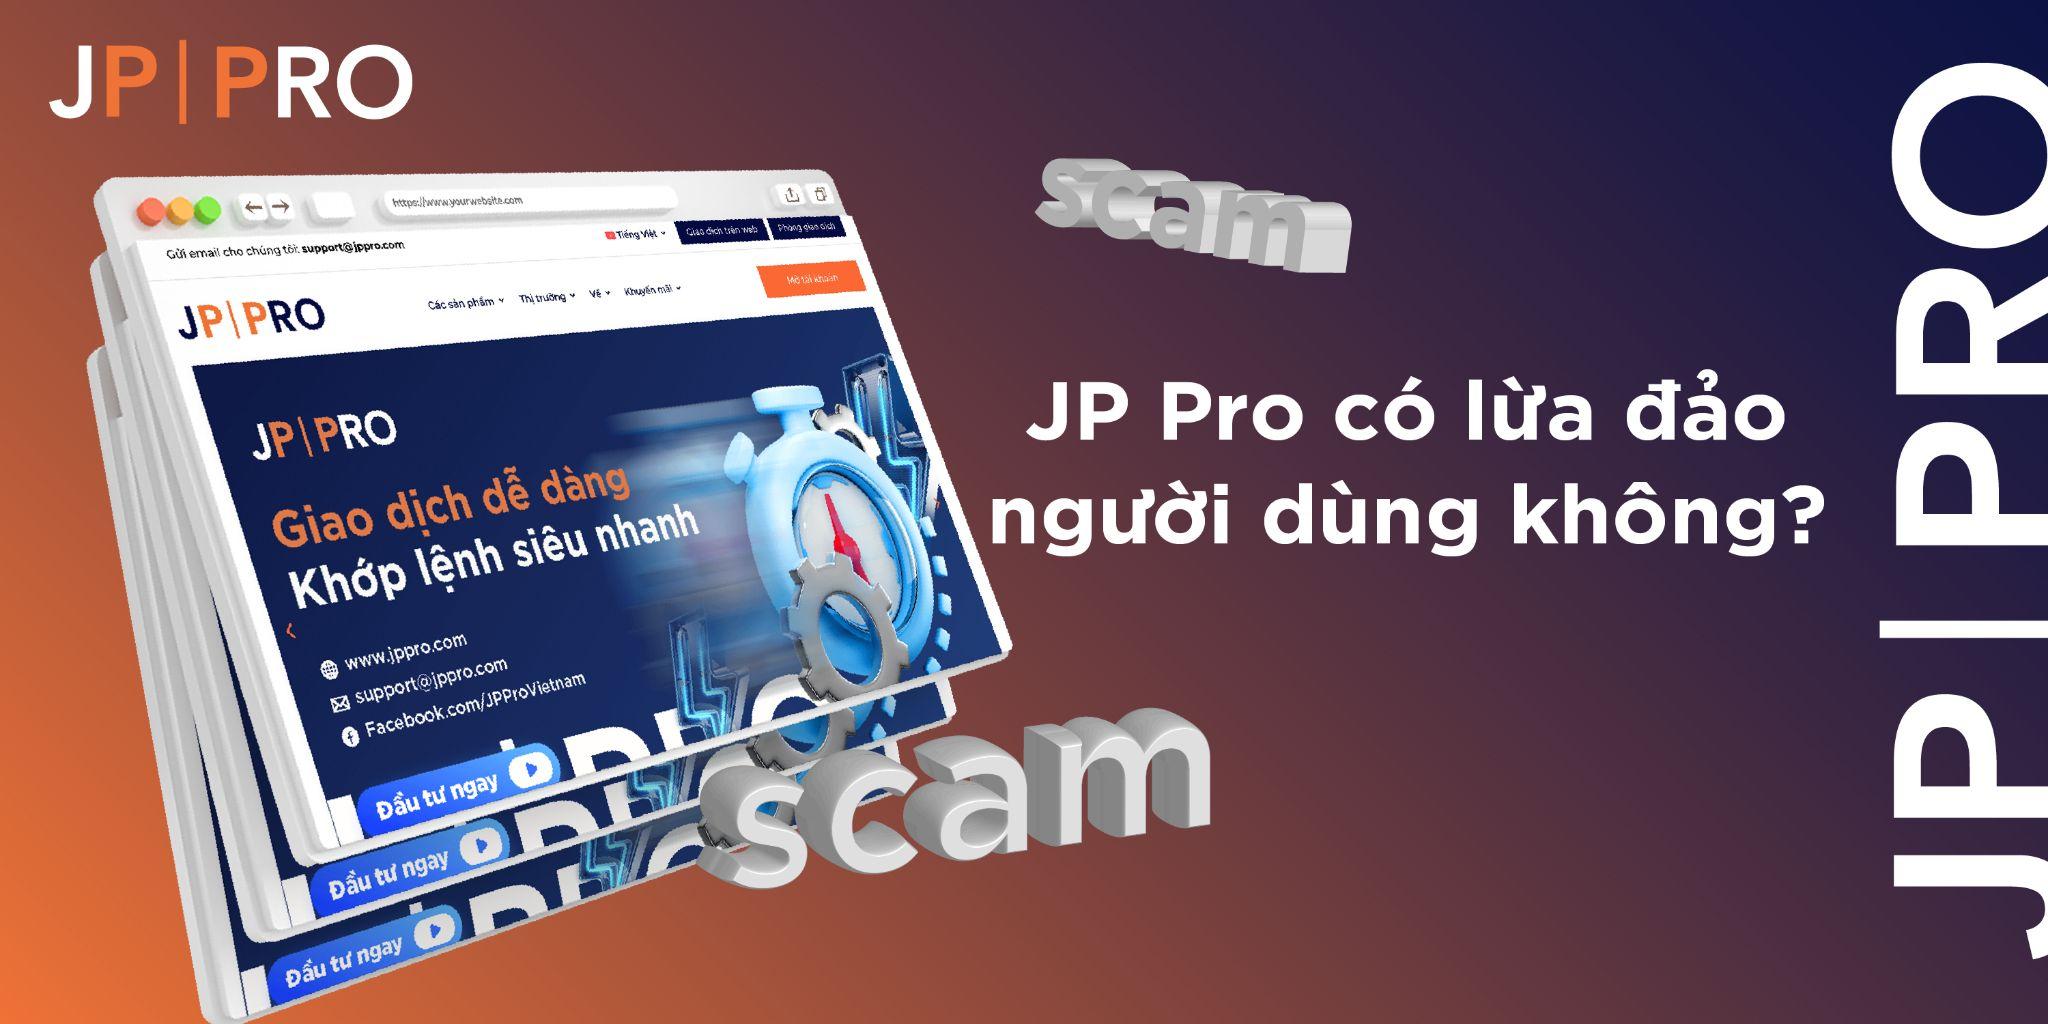 Đánh giá tính xác thực của JP Pro: Có phải là một sàn lừa đảo hay không?